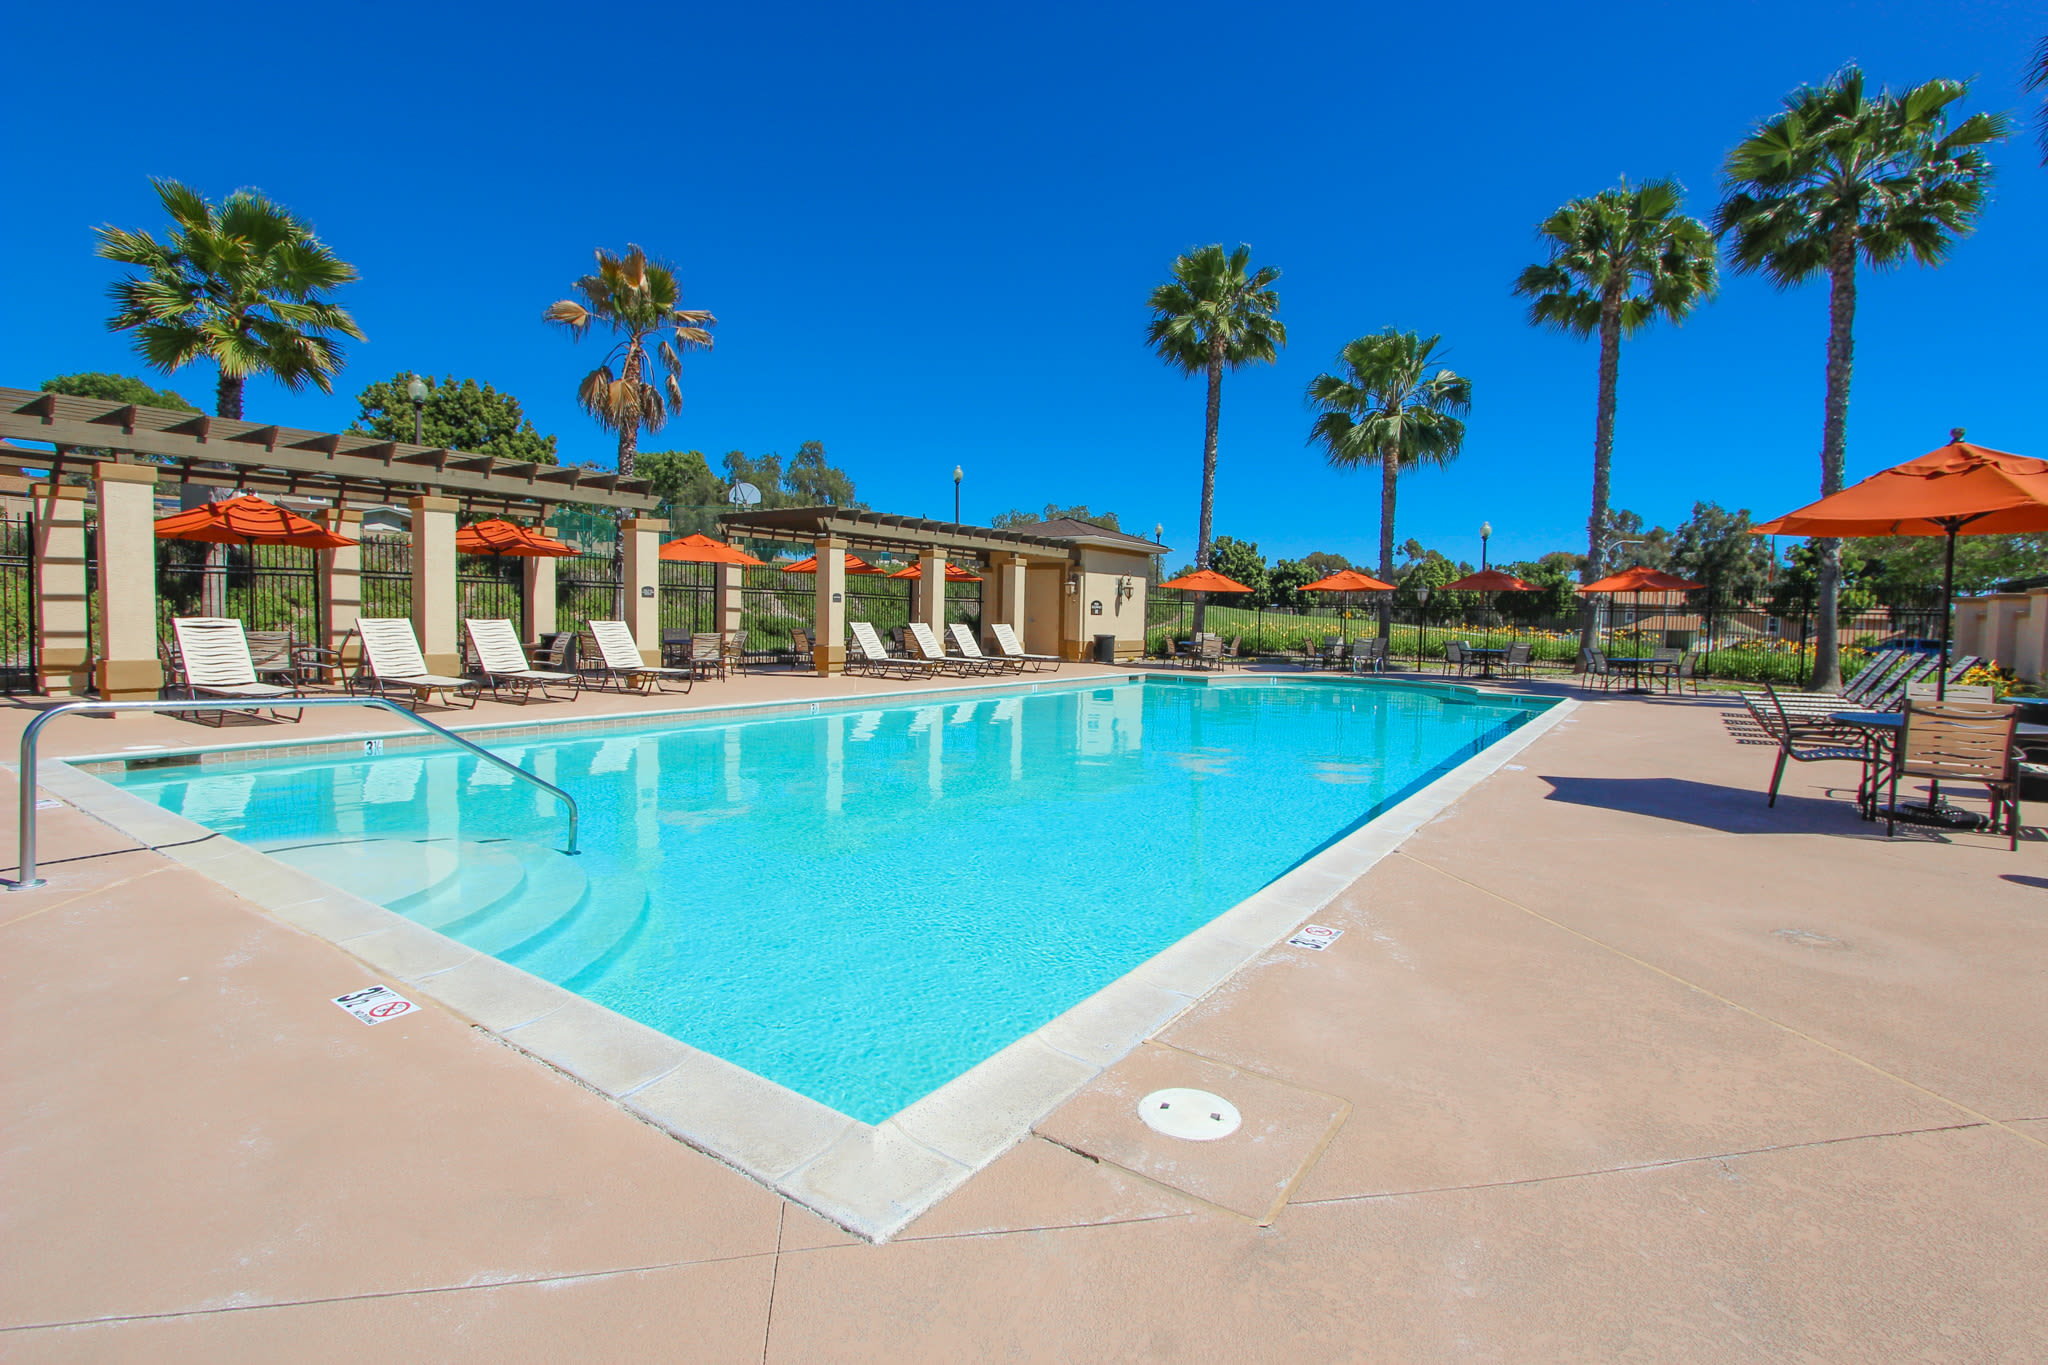 A swimming pool at Aero Ridge in San Diego, California